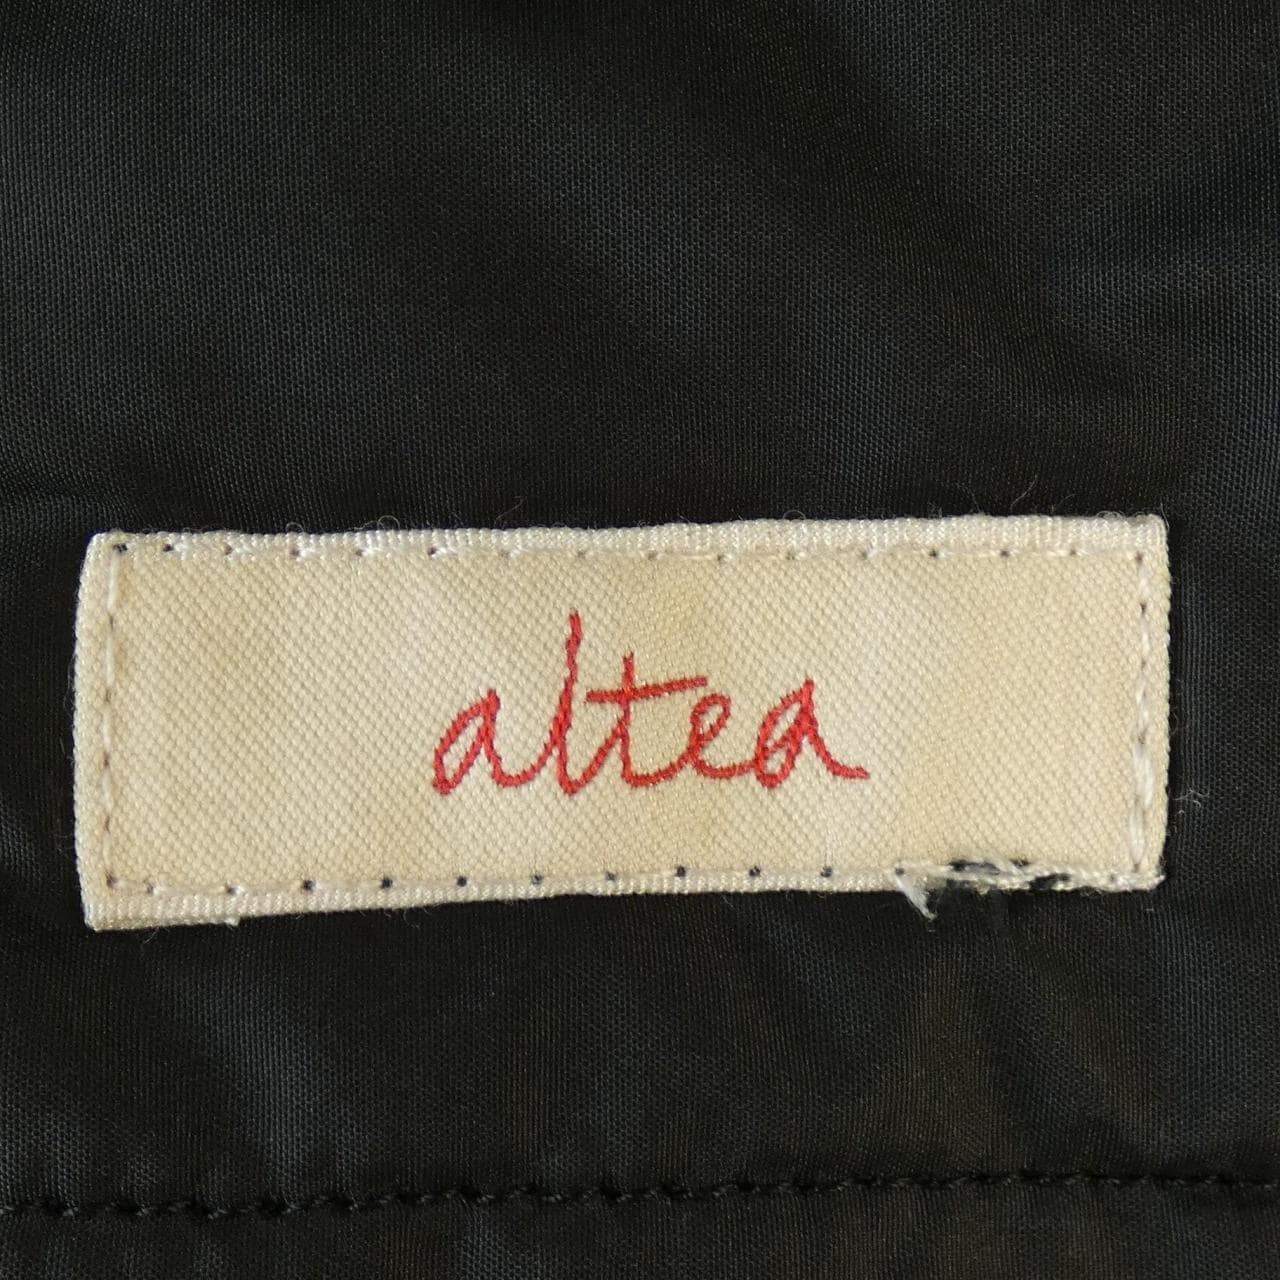 Althea ALTEA coat